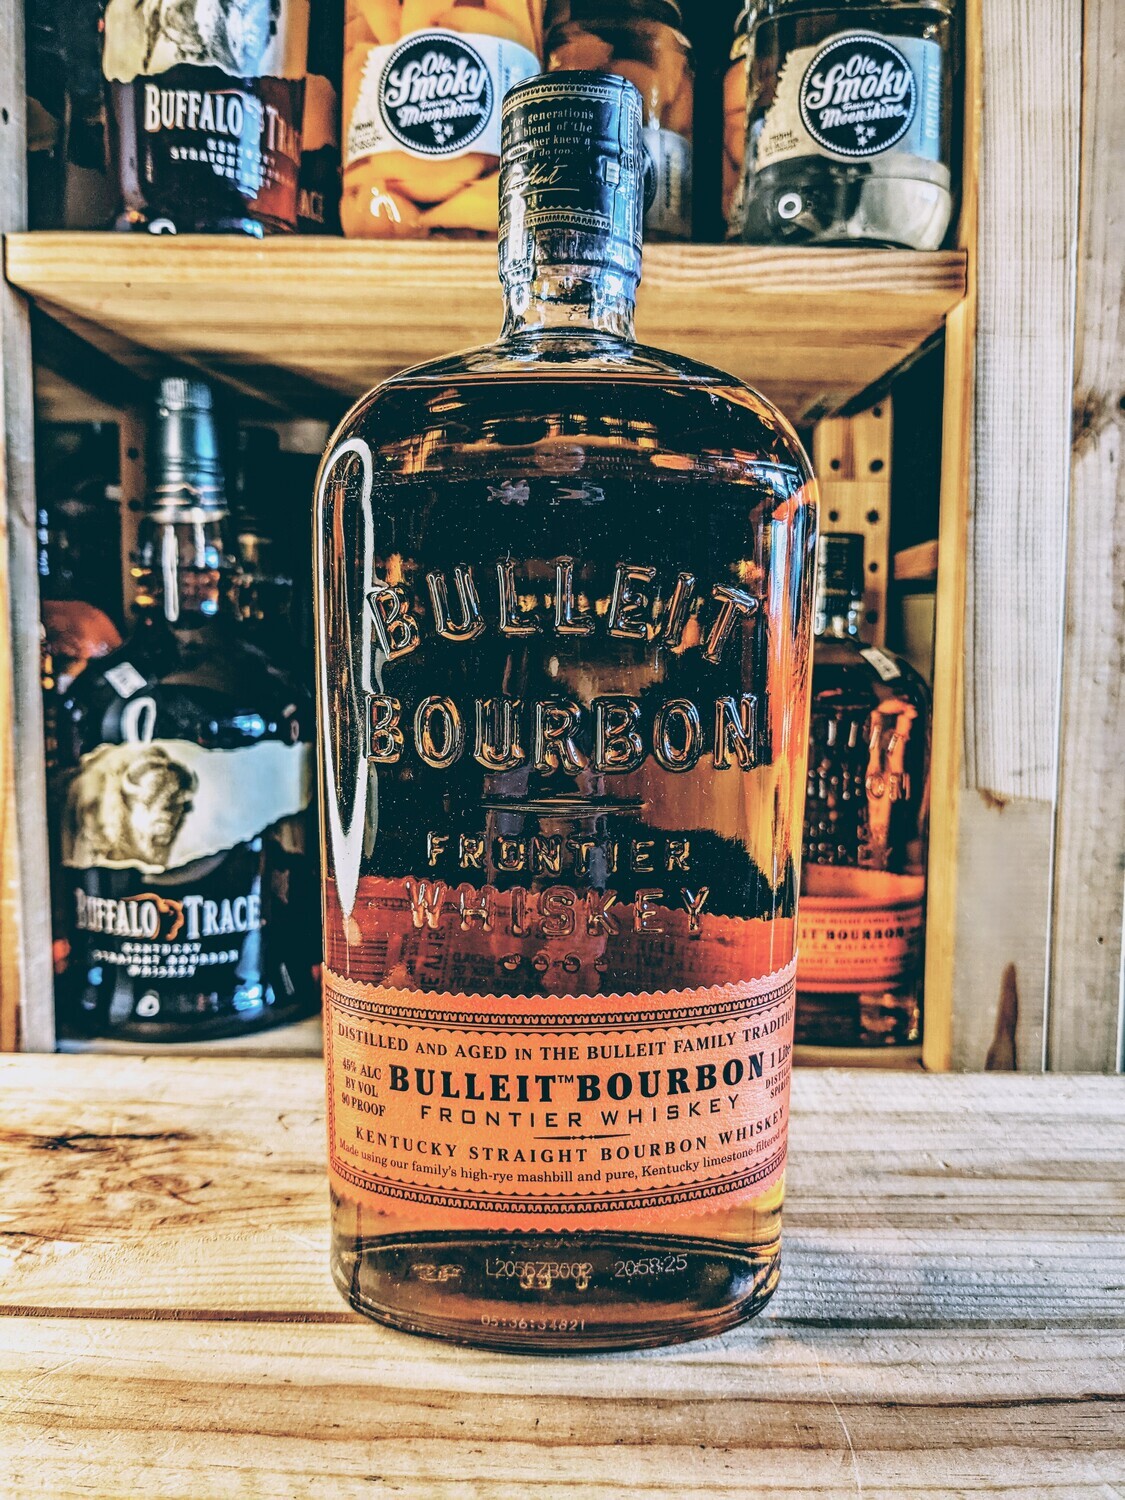 Bulleit Bourbon 1.0